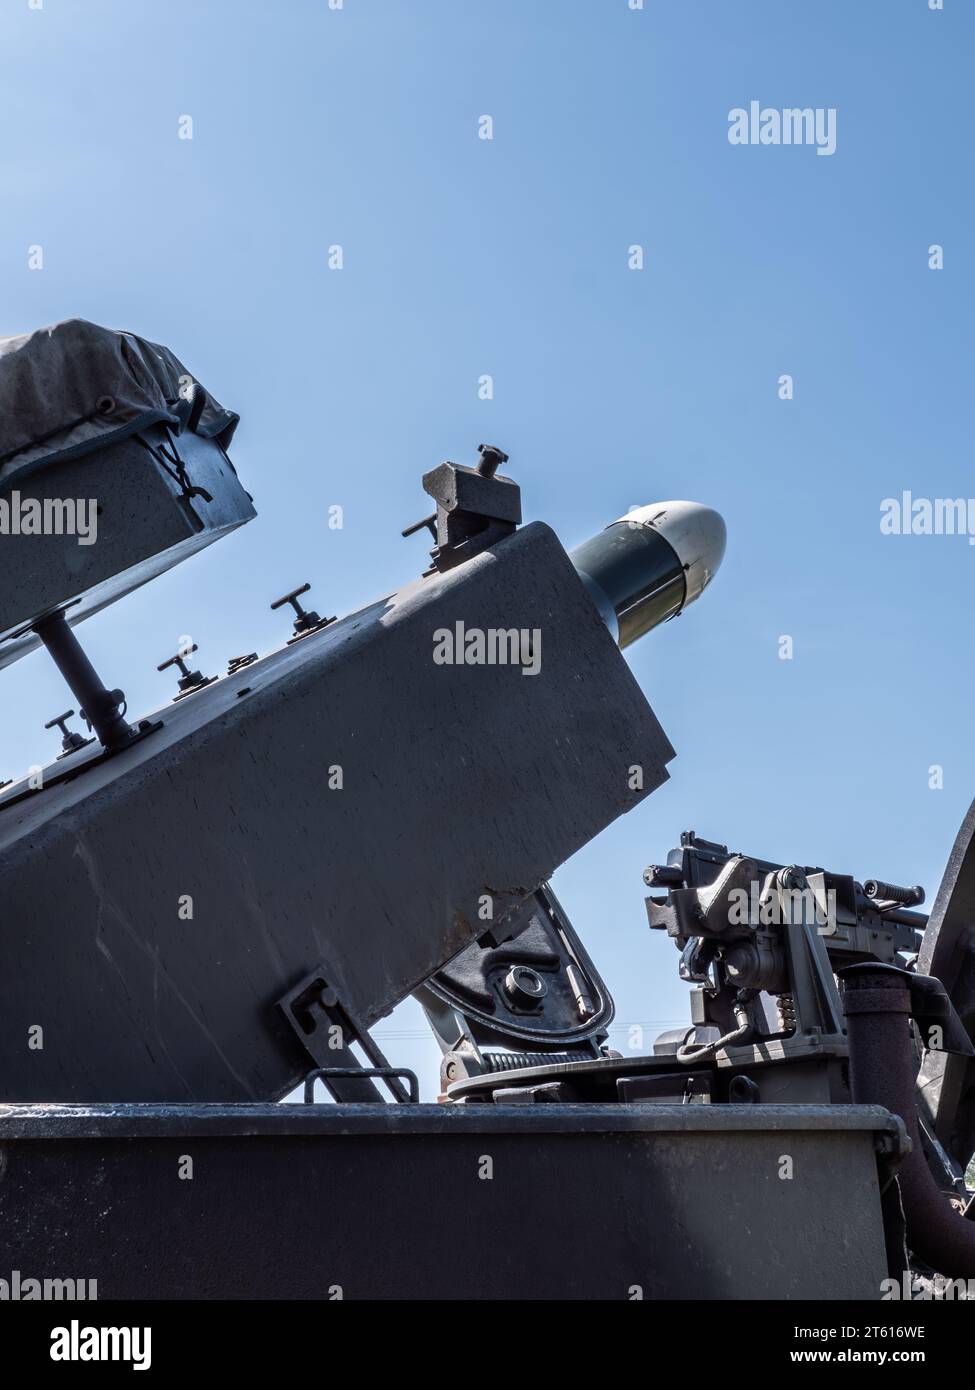 Rakete, Raketenwerfer auf ein kleines Militärfahrzeug, gepanzertes Fahrzeug, gegen einen blauen Himmel Stockfoto